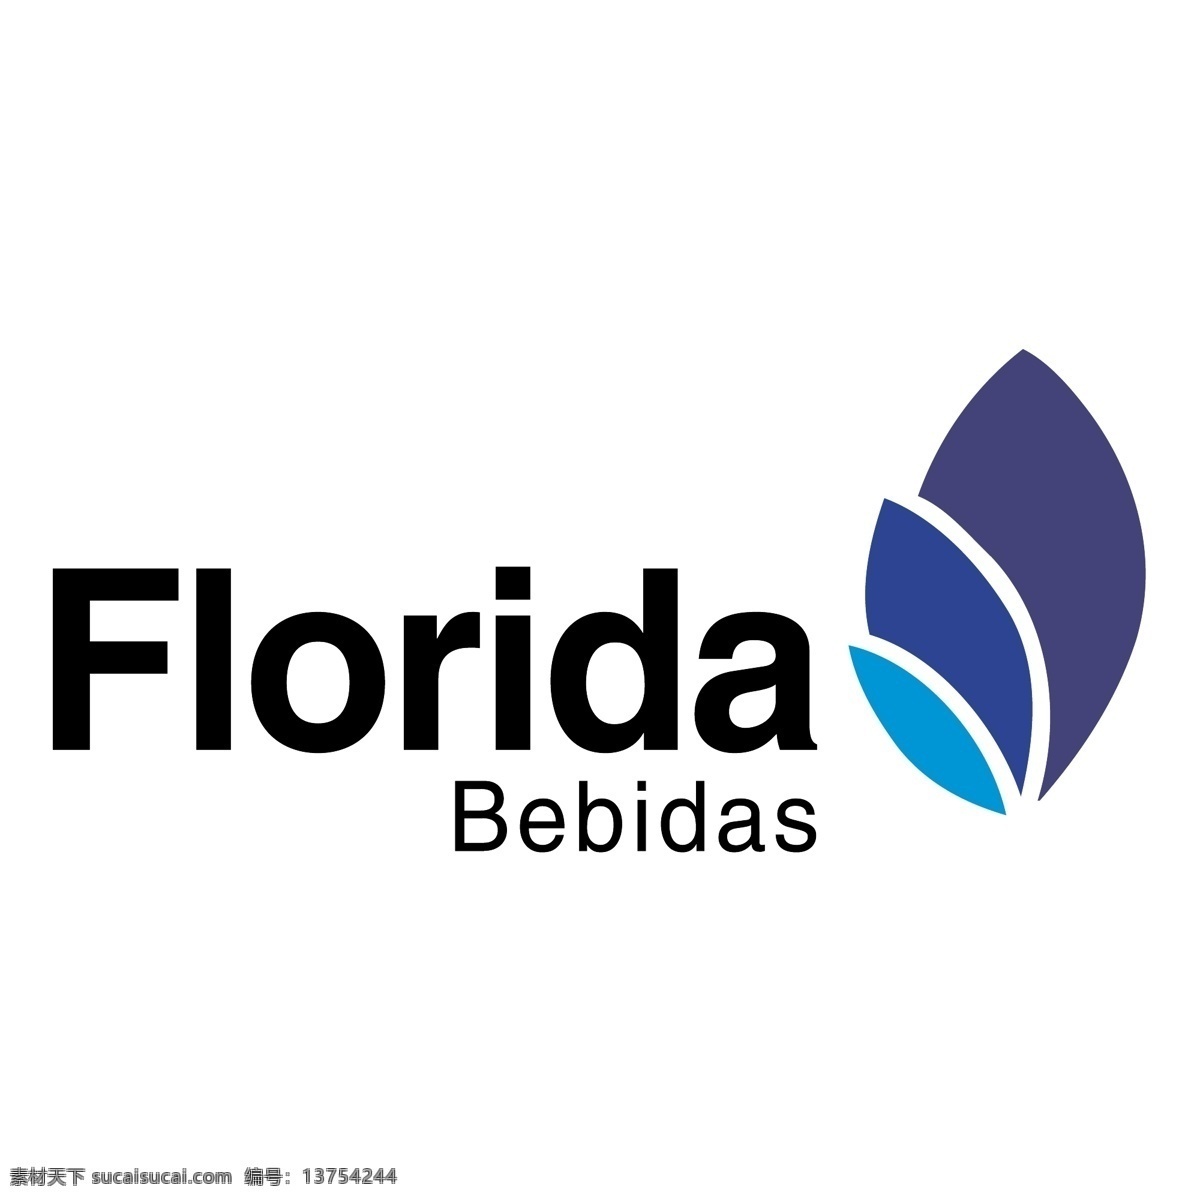 佛罗里达州 bebidas 佛罗里达 矢量 矢量图像 自由 标志 logo 建筑家居